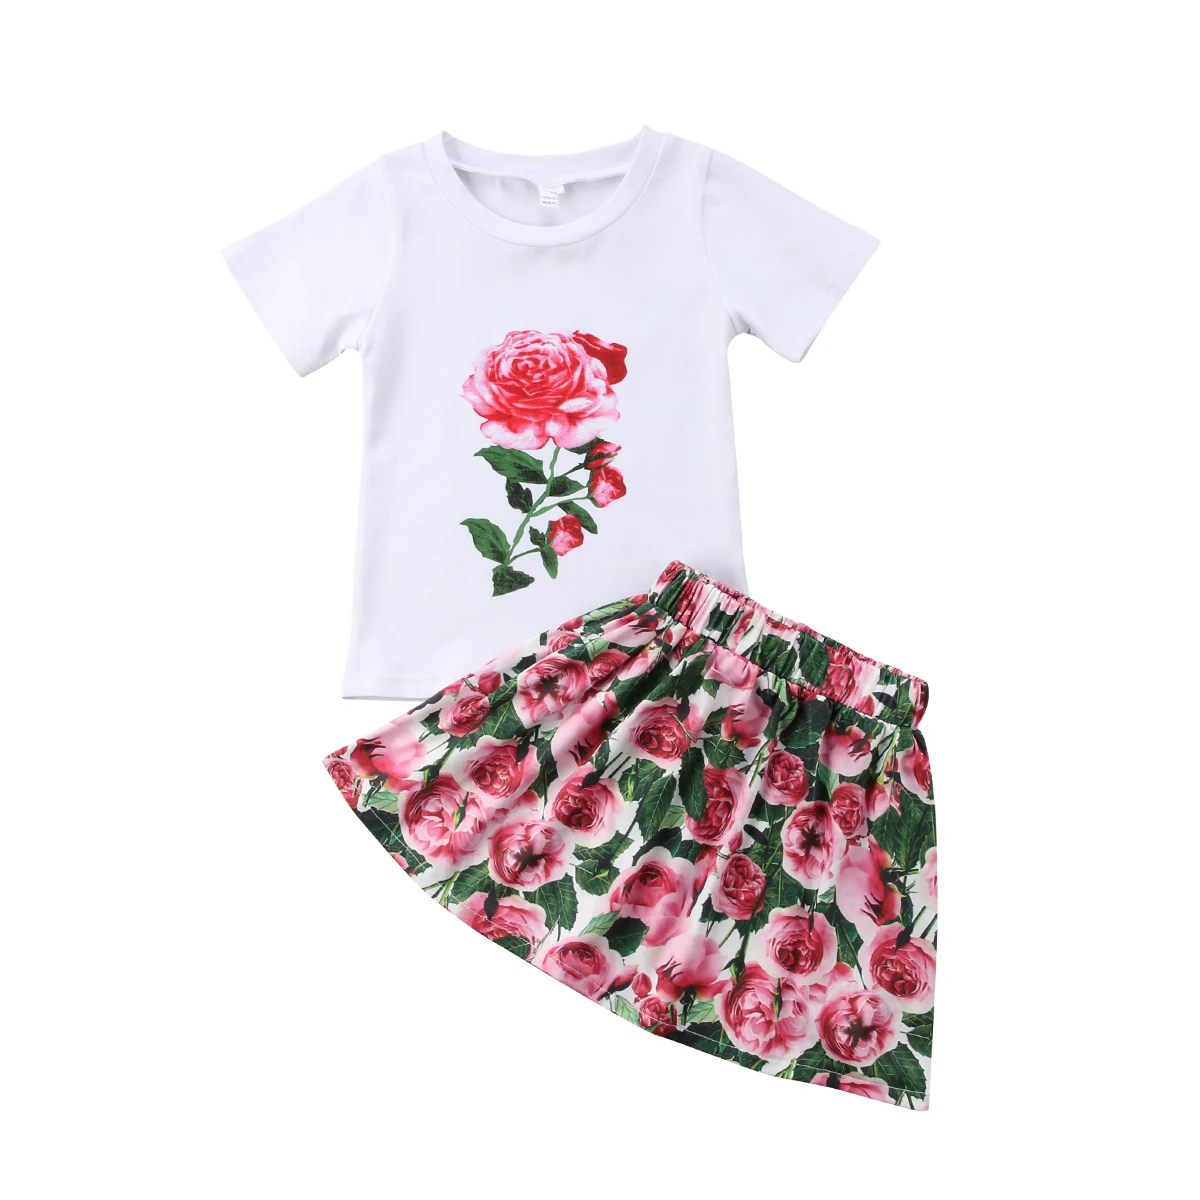 Для новорожденных, наряды Роза Top Изделие из хлопка с короткими рукавами футболка + юбка с цветочным рисунком 2 предмета в комплекте 2018 лето